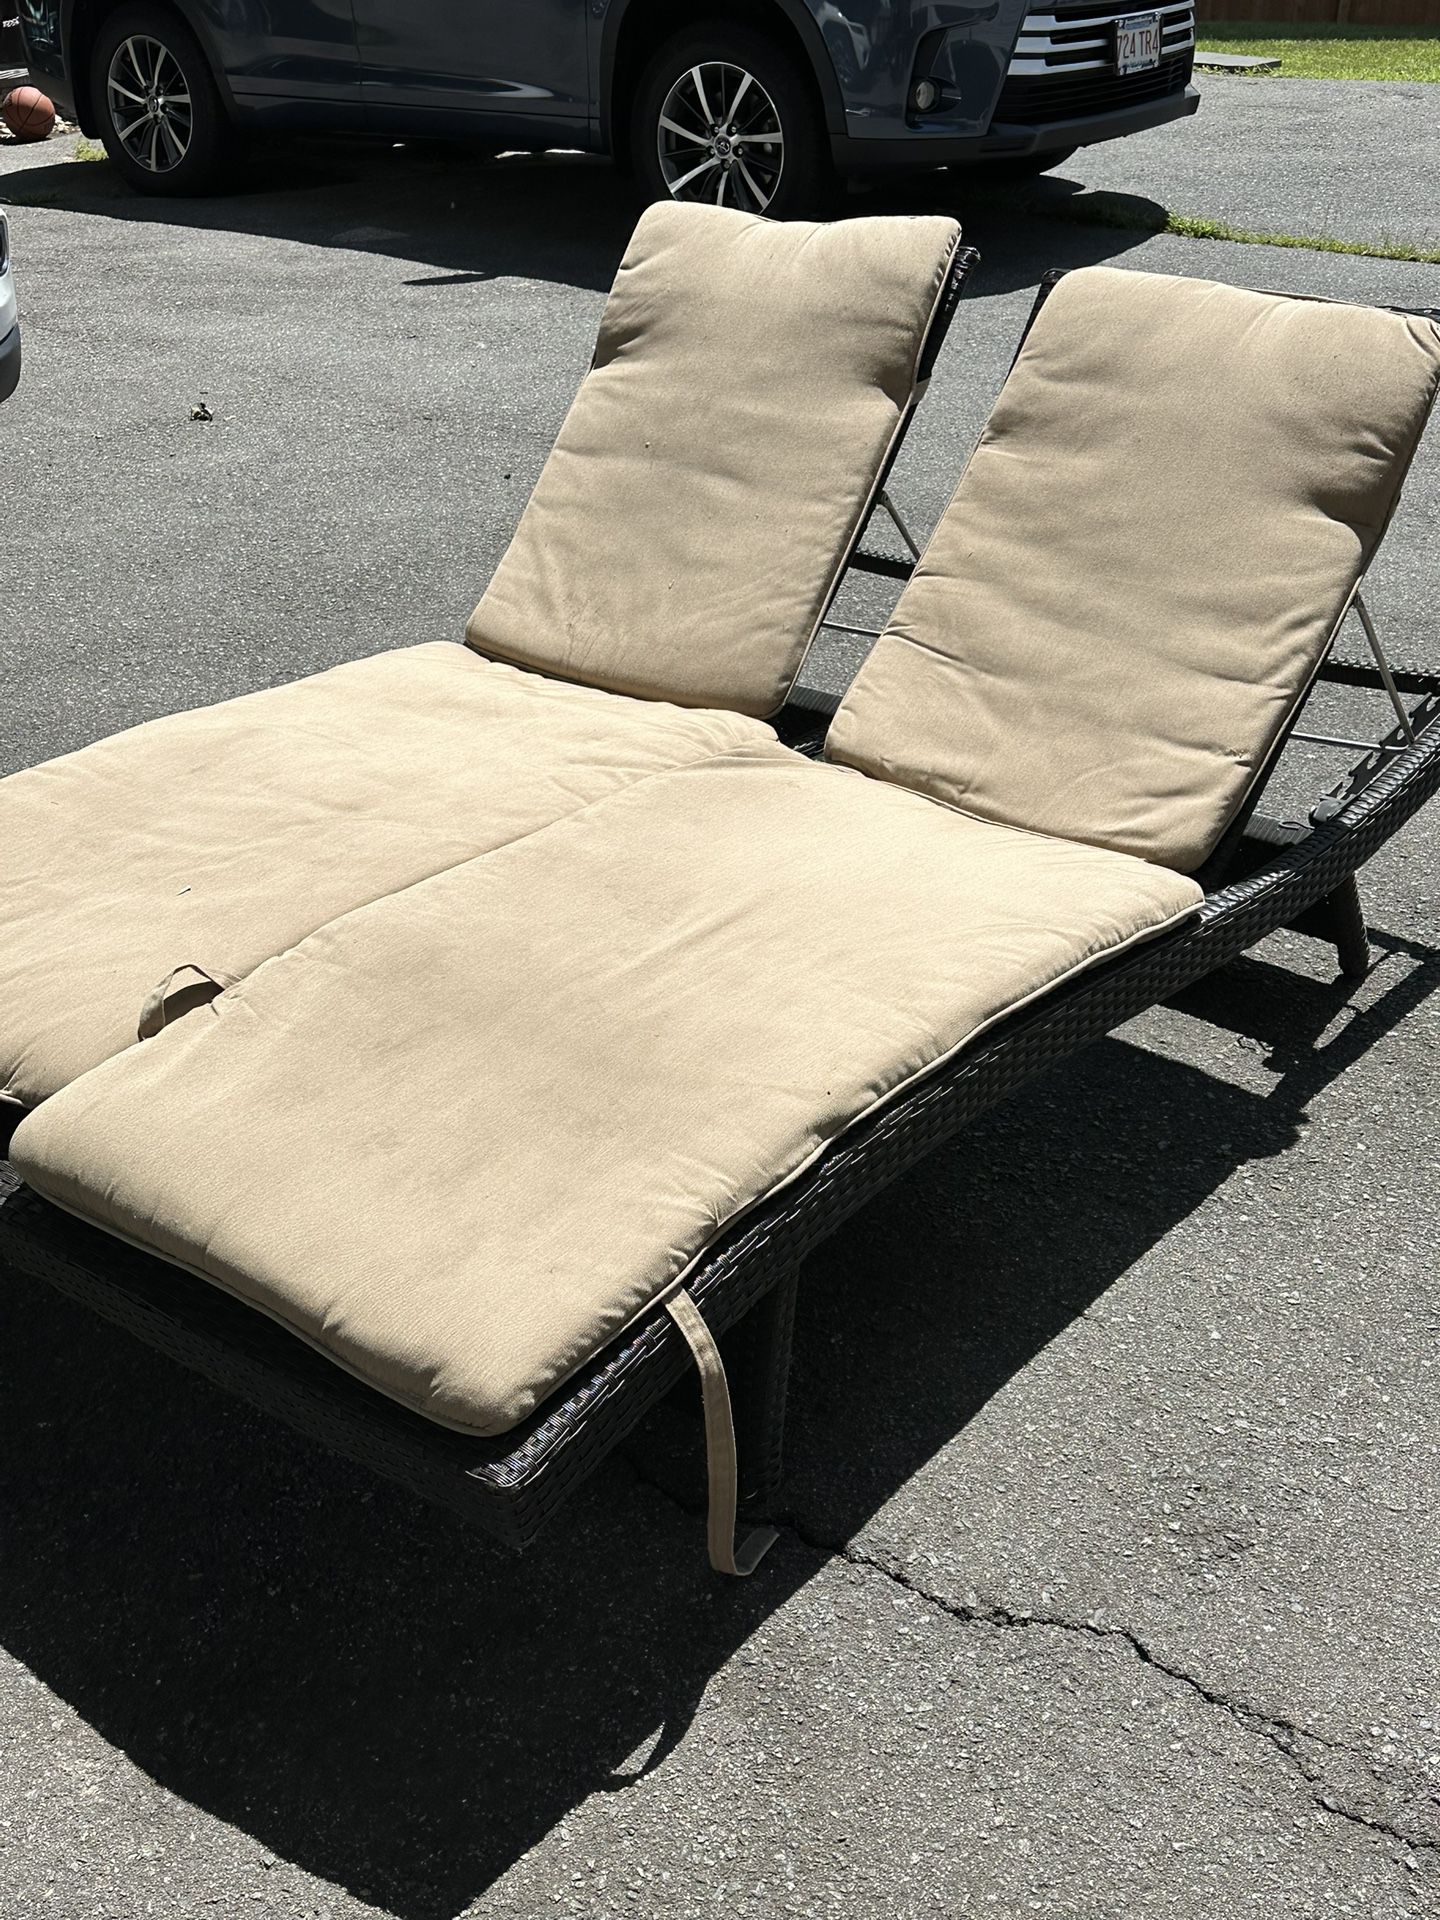 2 Lounge Pool Chairs